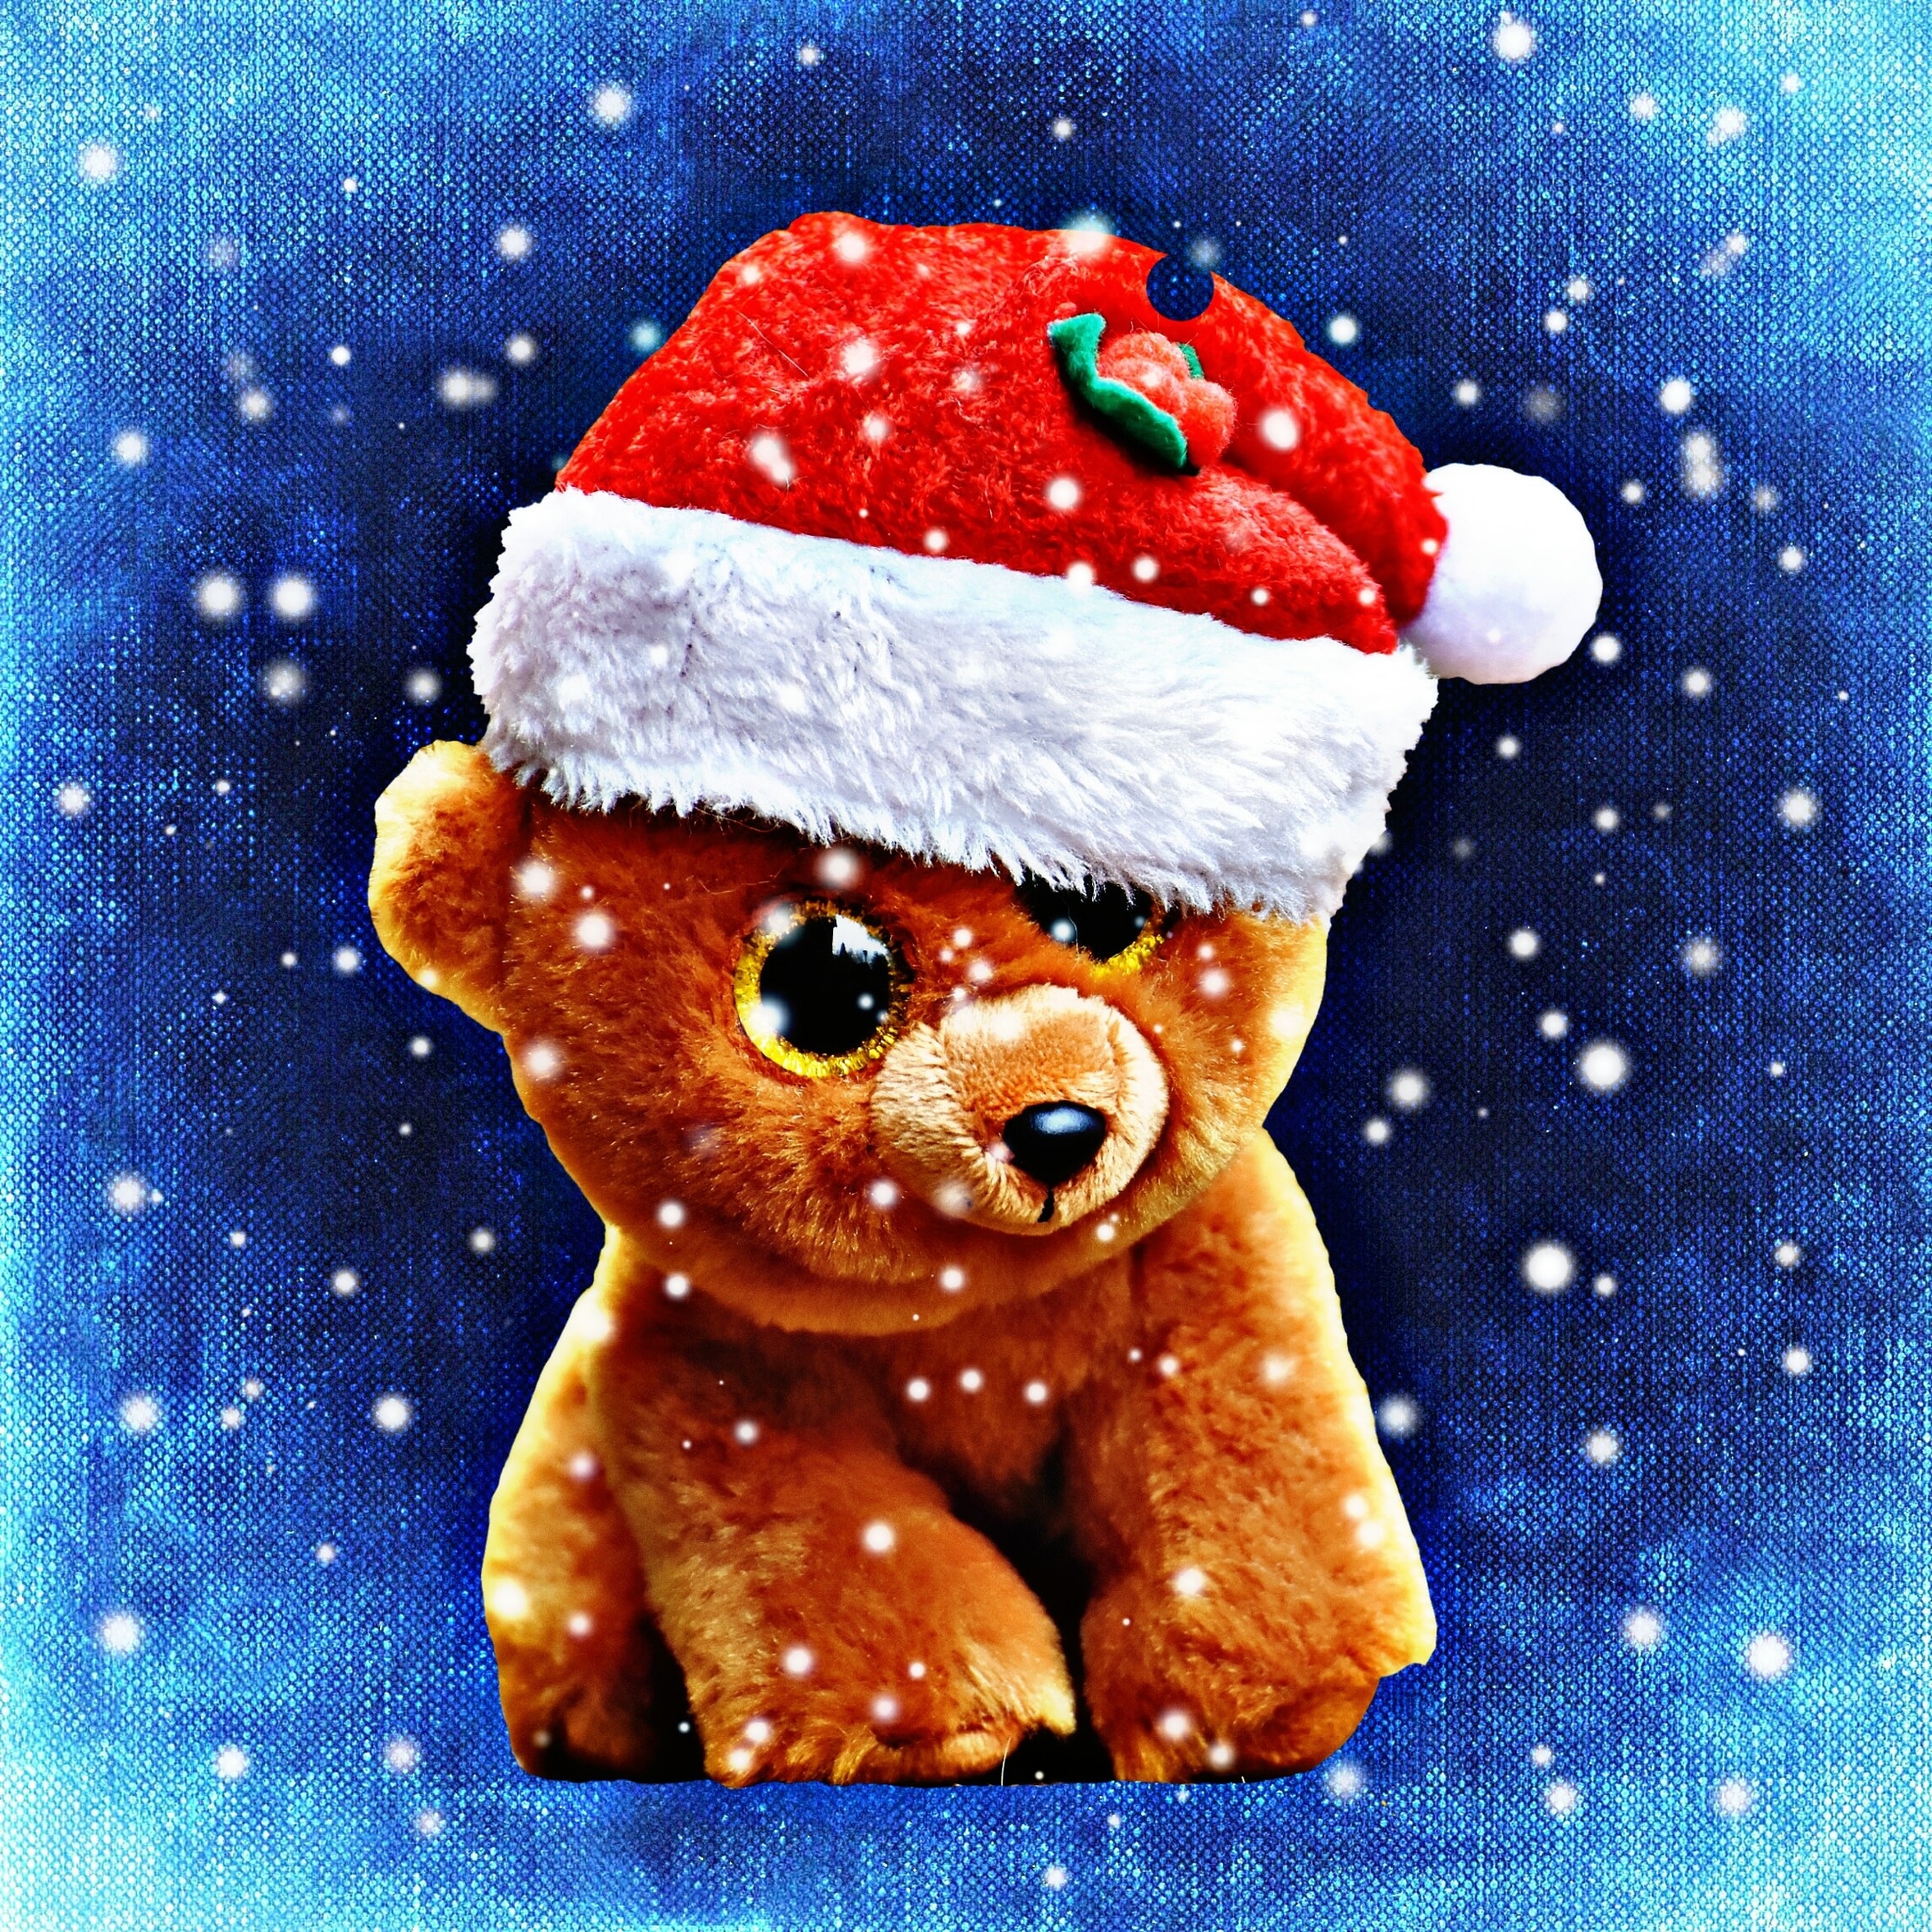 brown bear plush toy wearing santa hat illustration